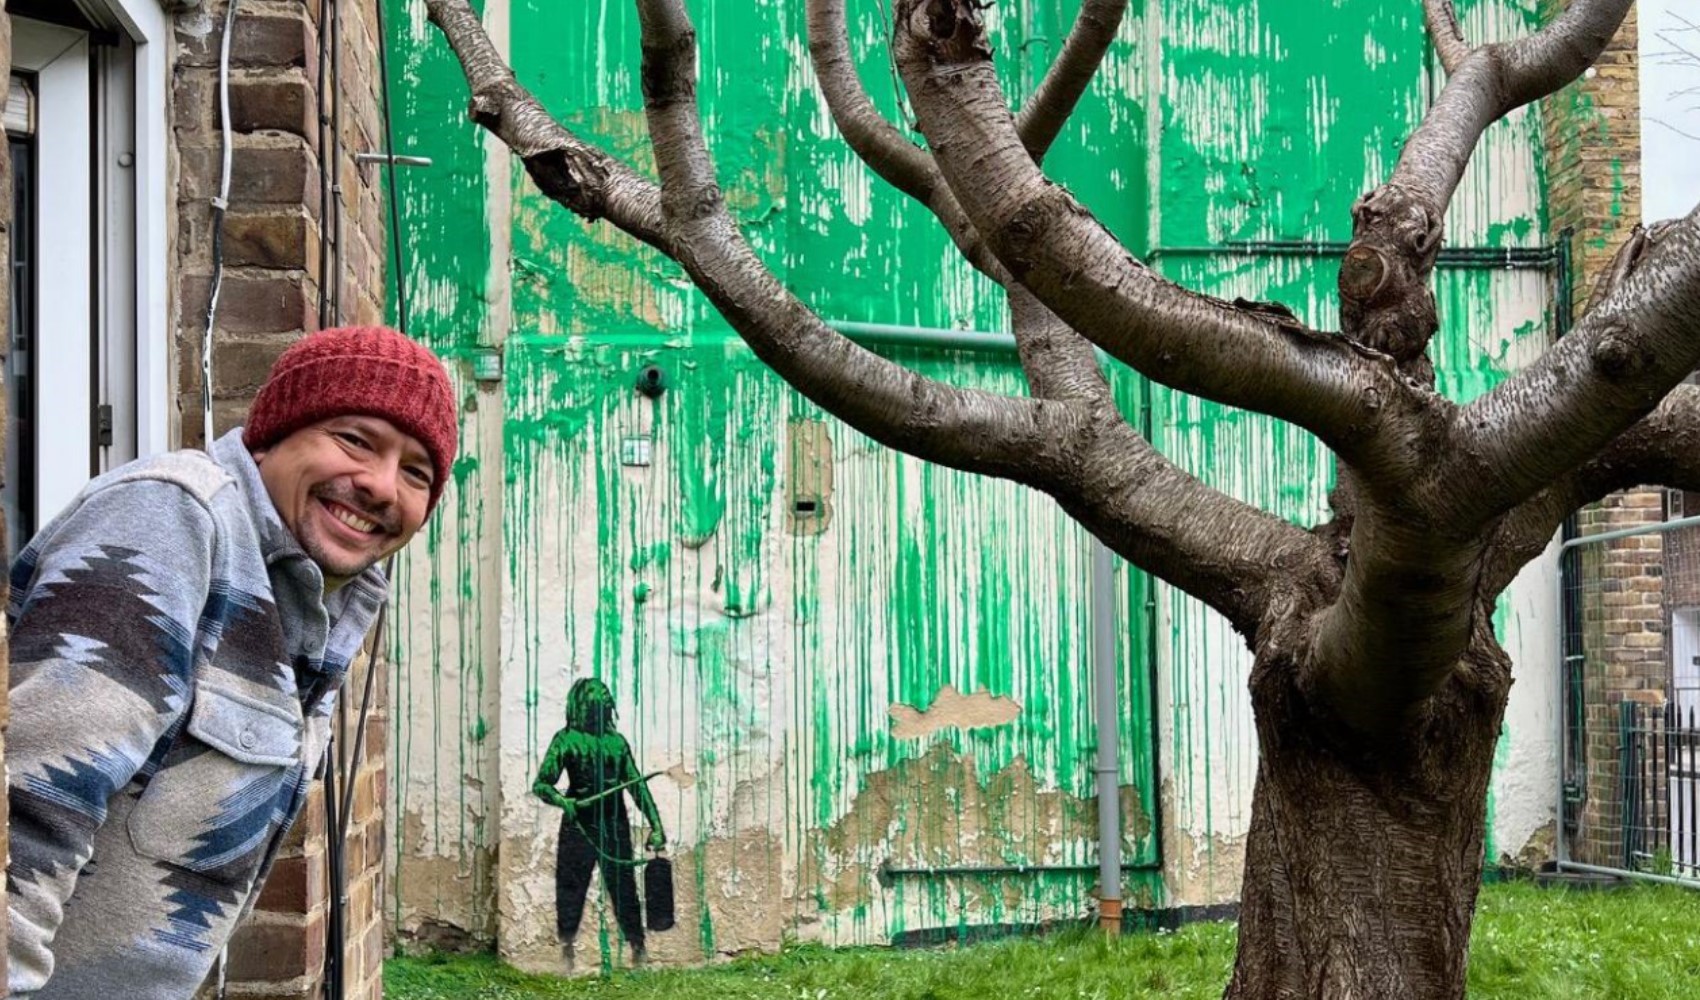 BBC muhabiri: Banksy evimin duvarına resim yapınca meşhur oldum